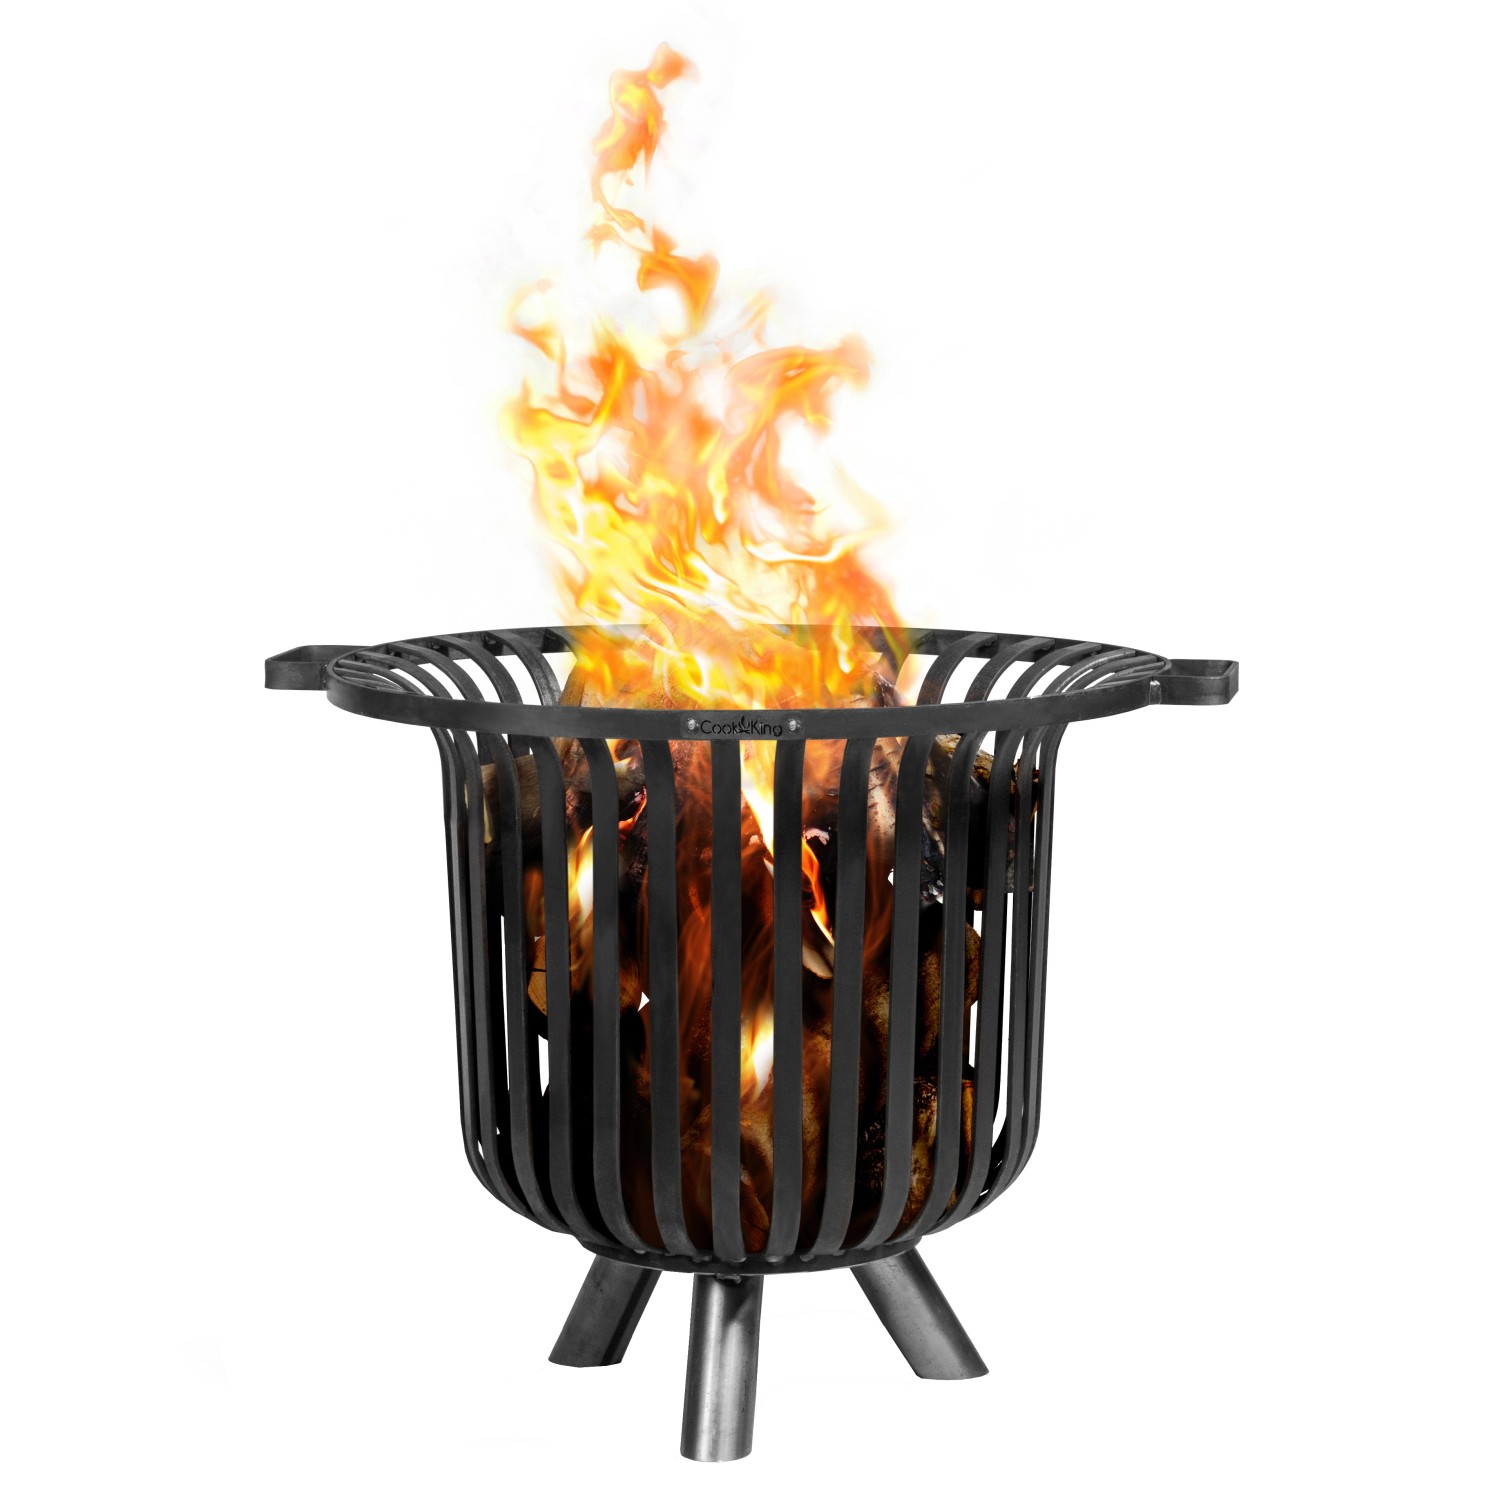 CookKing Feuerkorb Stahl Verona 60 cm x 60 cm x 52 cm Schwarz